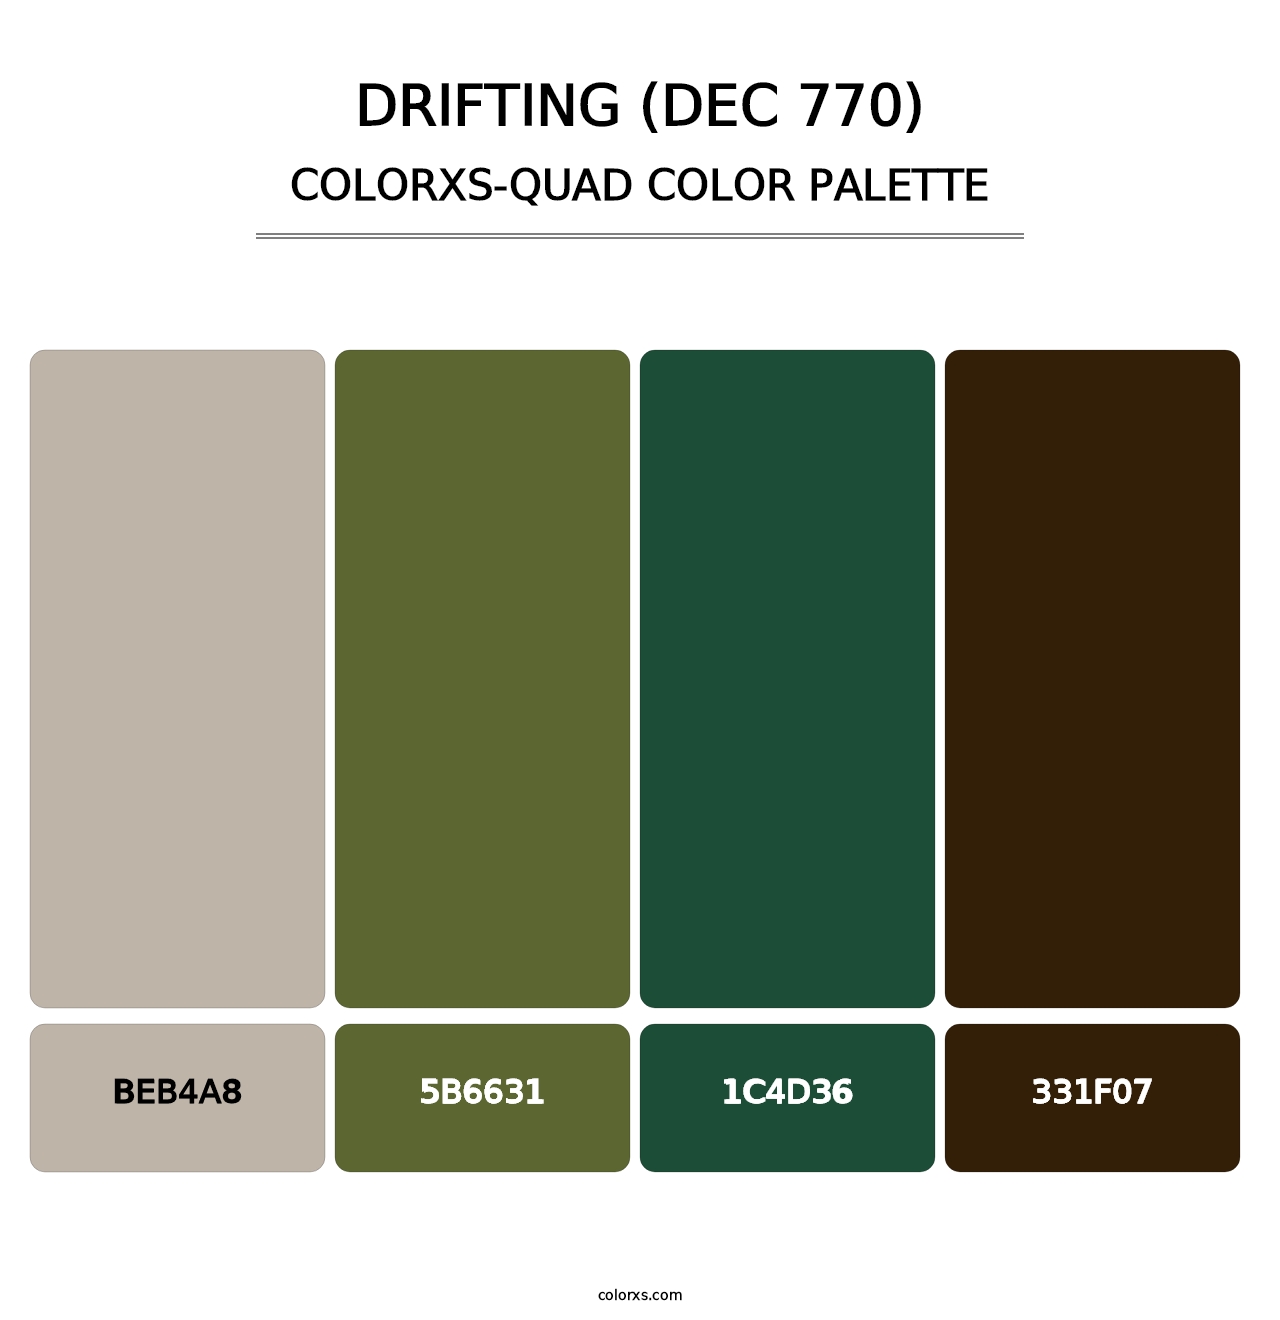 Drifting (DEC 770) - Colorxs Quad Palette